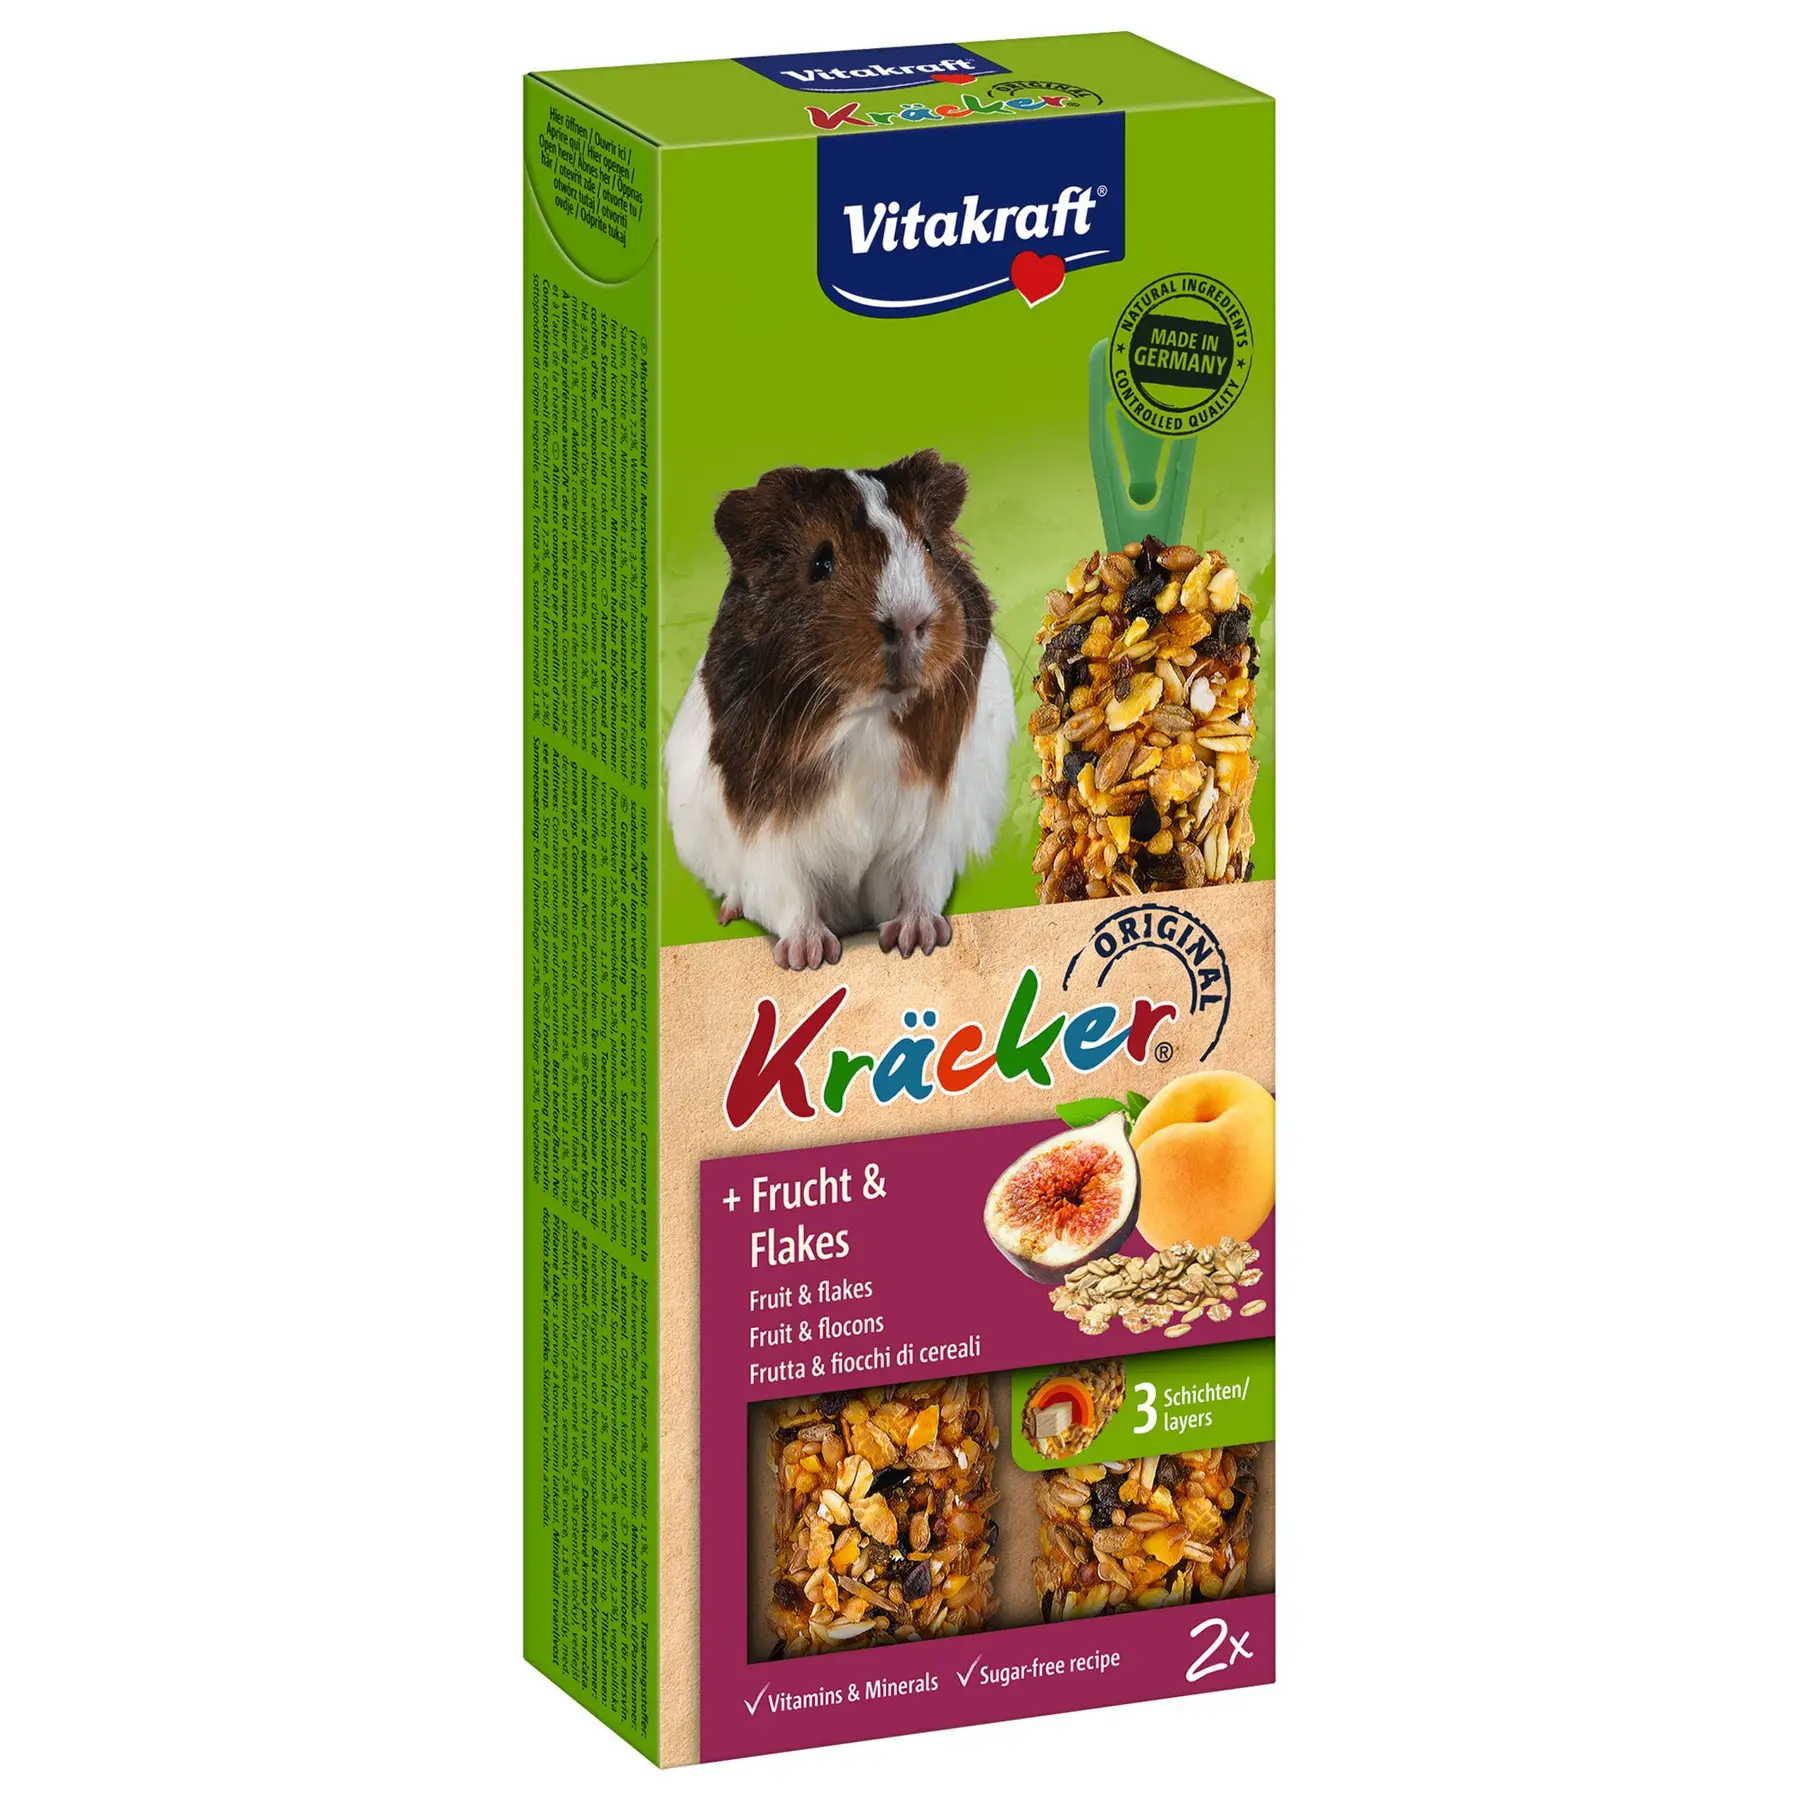 Ласощі для морських свинок Vitakraft Kracker Original + Frucht & Flakes, фрукти та пластівці, 2 шт., 112 г (25155) - фото 1